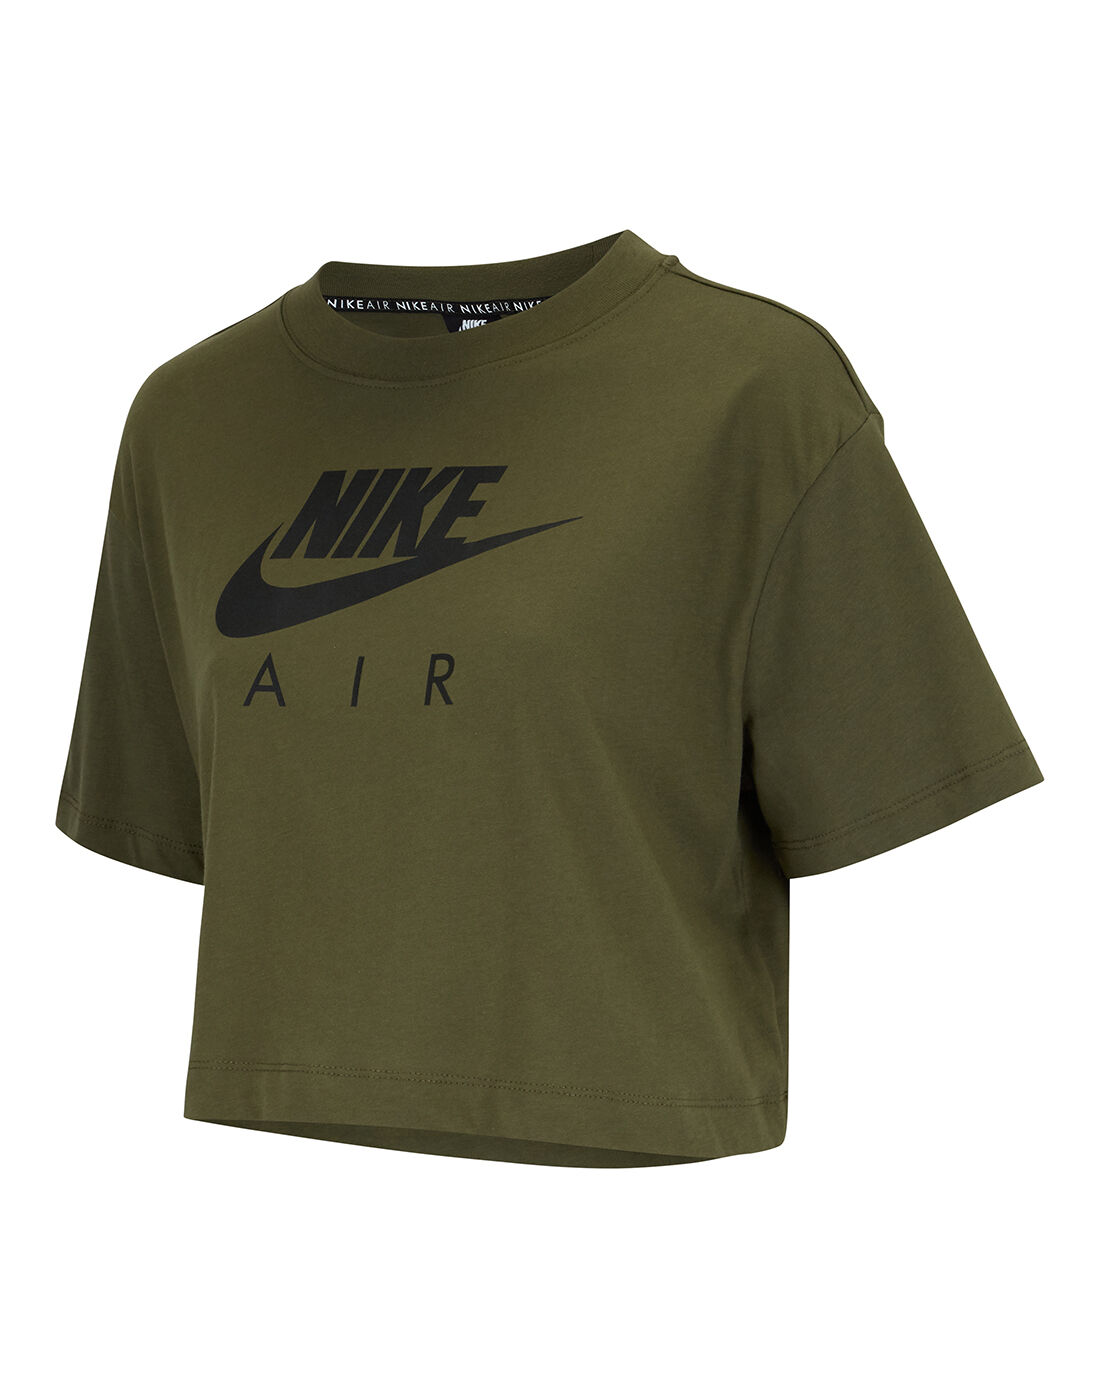 nike air t shirt green